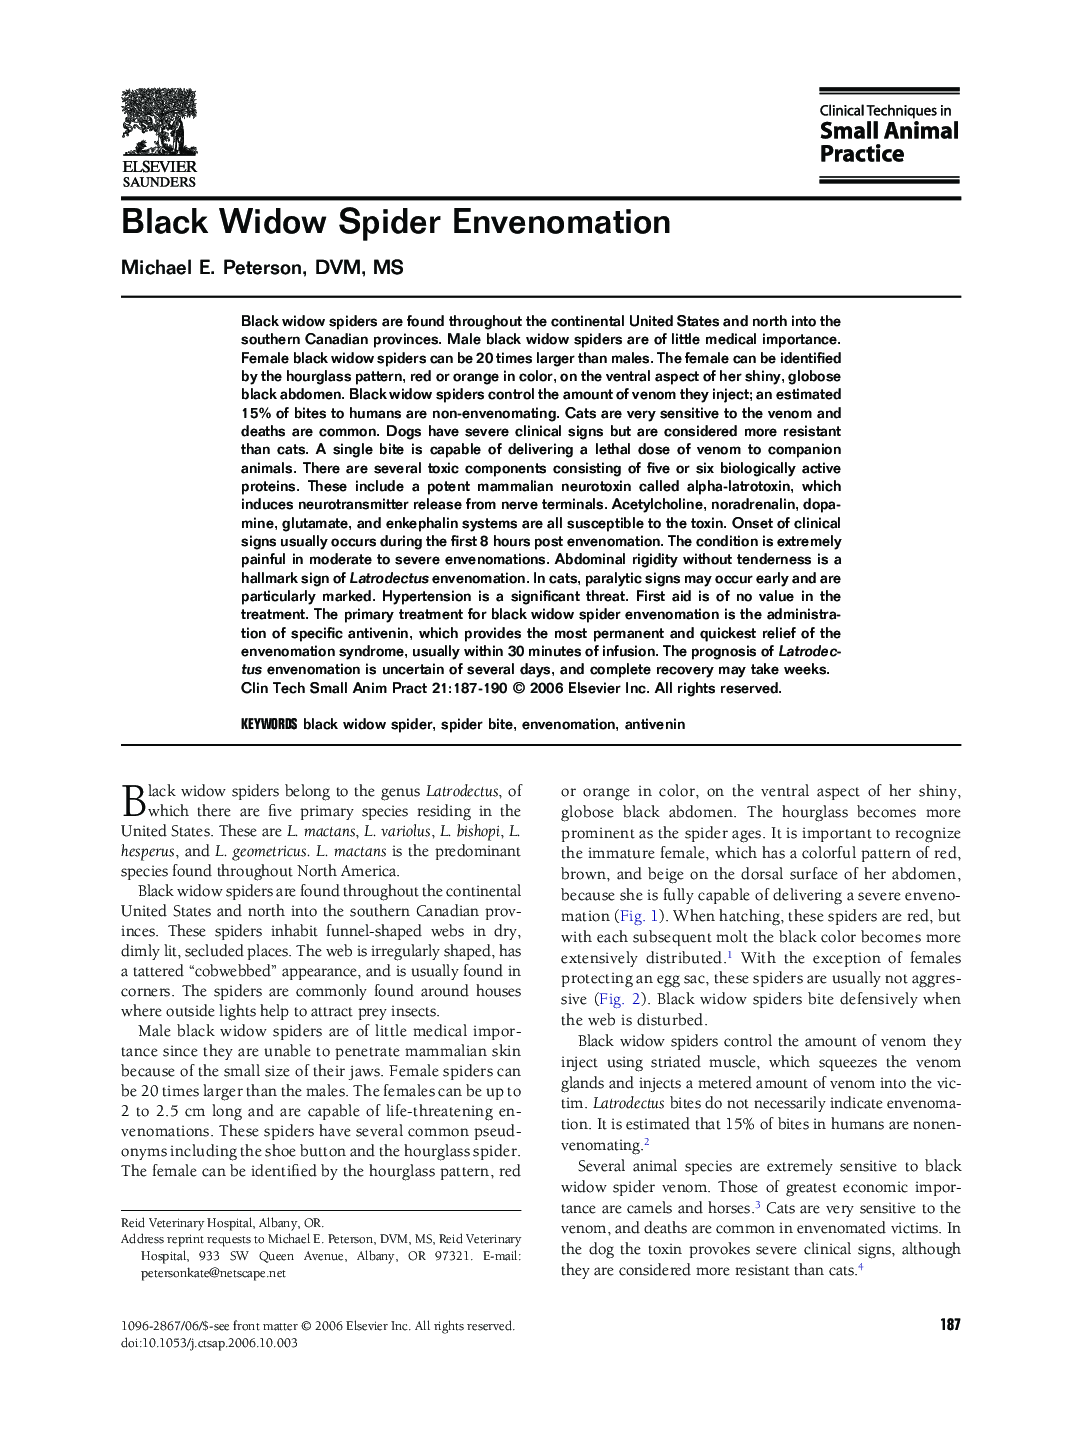 Black Widow Spider Envenomation